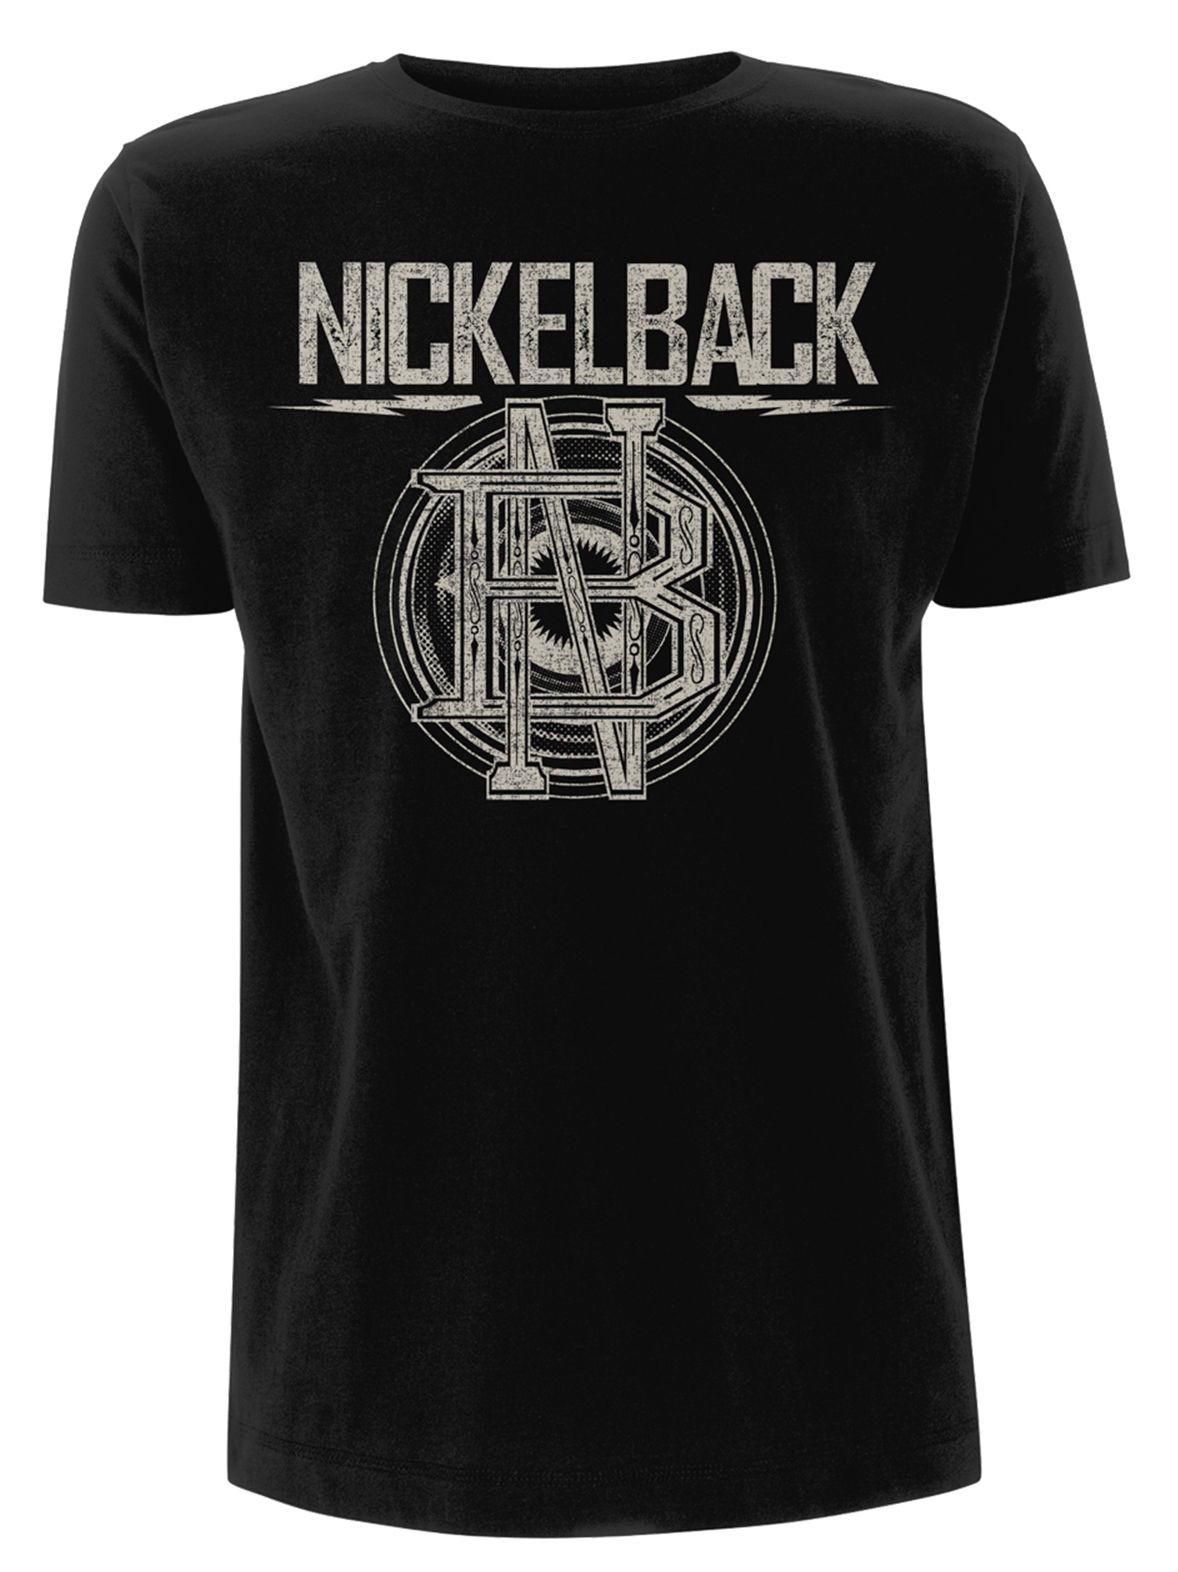 Circle T Logo - Nickelback 'Logo Circle' T-Shirt - NEW & OFFICIAL! | eBay